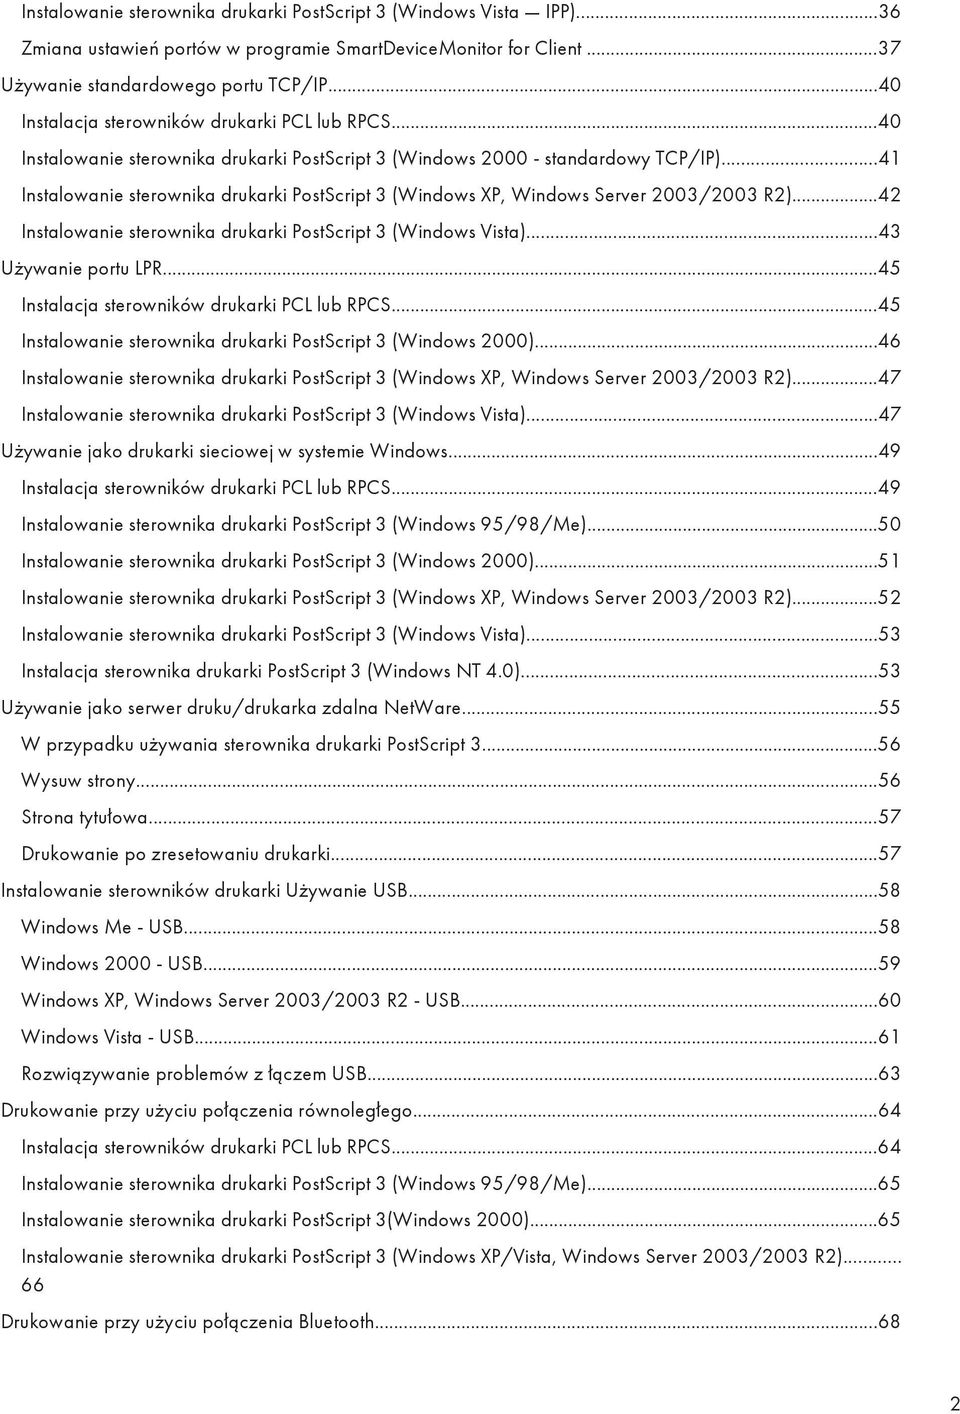 ..41 Instalowanie sterownika drukarki PostScript 3 (Windows XP, Windows Server 2003/2003 R2)...42 Instalowanie sterownika drukarki PostScript 3 (Windows Vista)...43 Używanie portu LPR.